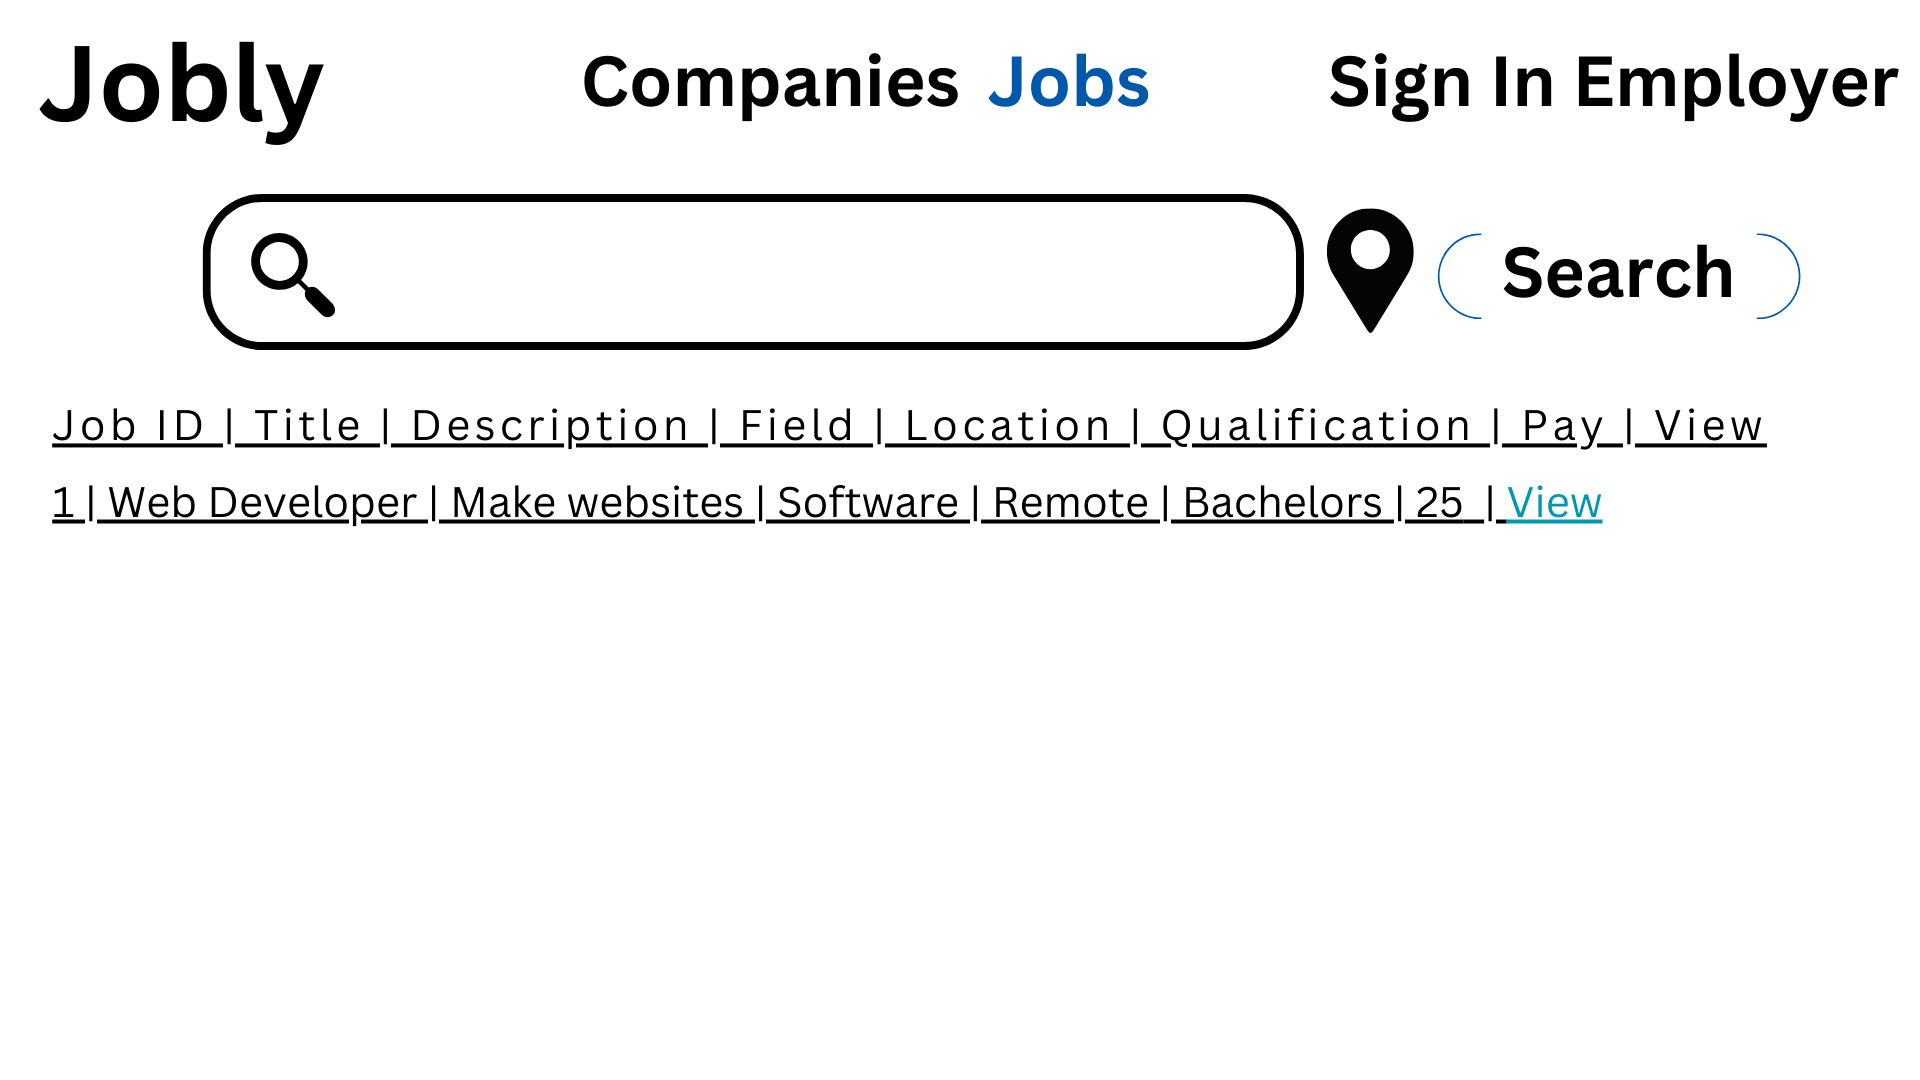 Jobly Jobs List